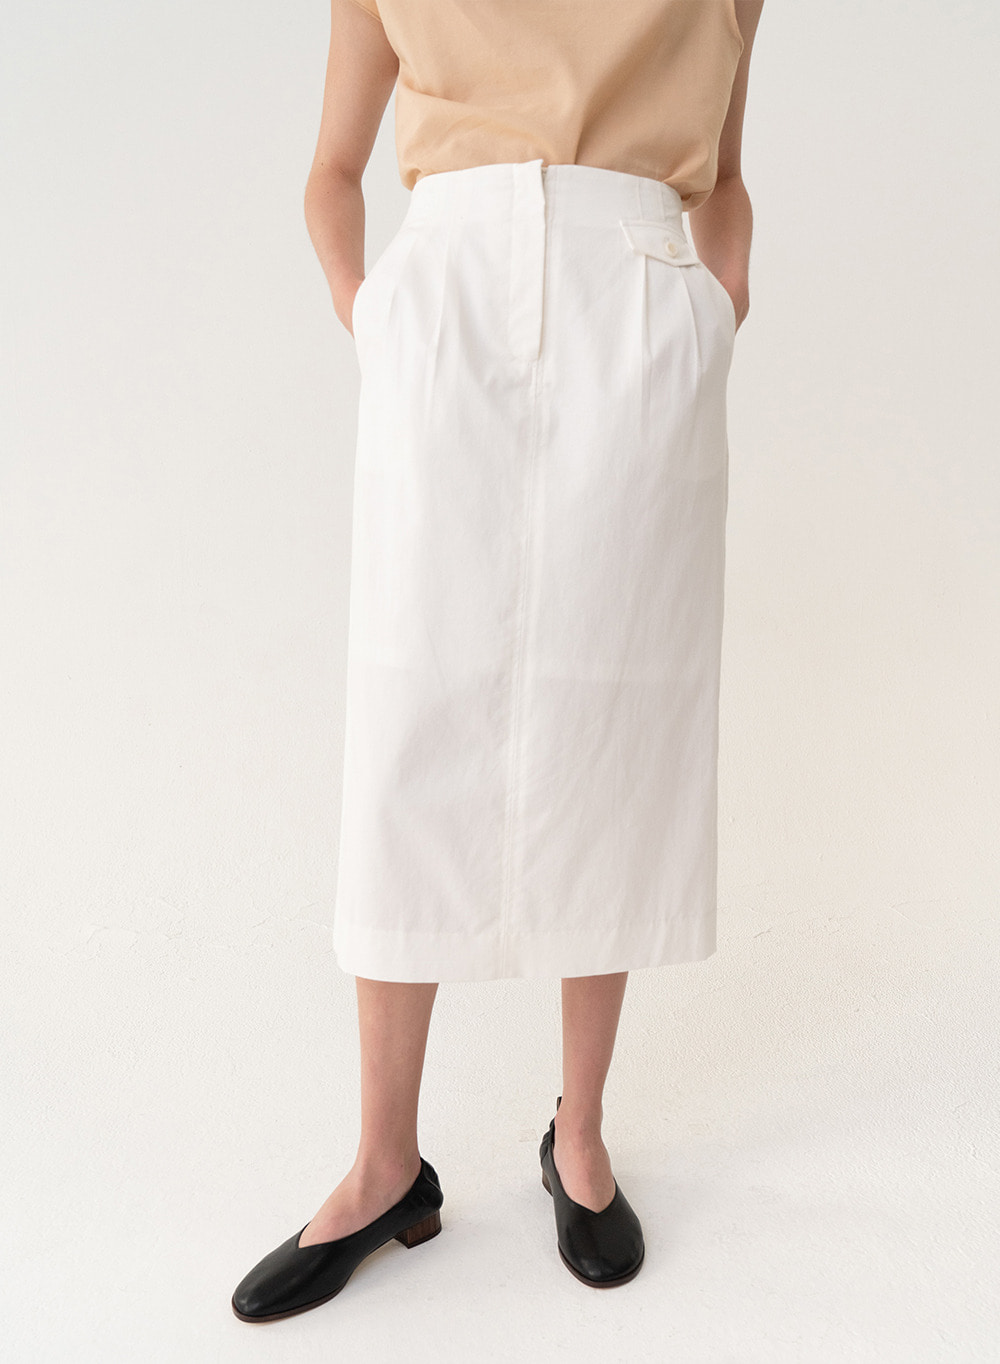 [ESSENTIAL] Original H-line Skirt White